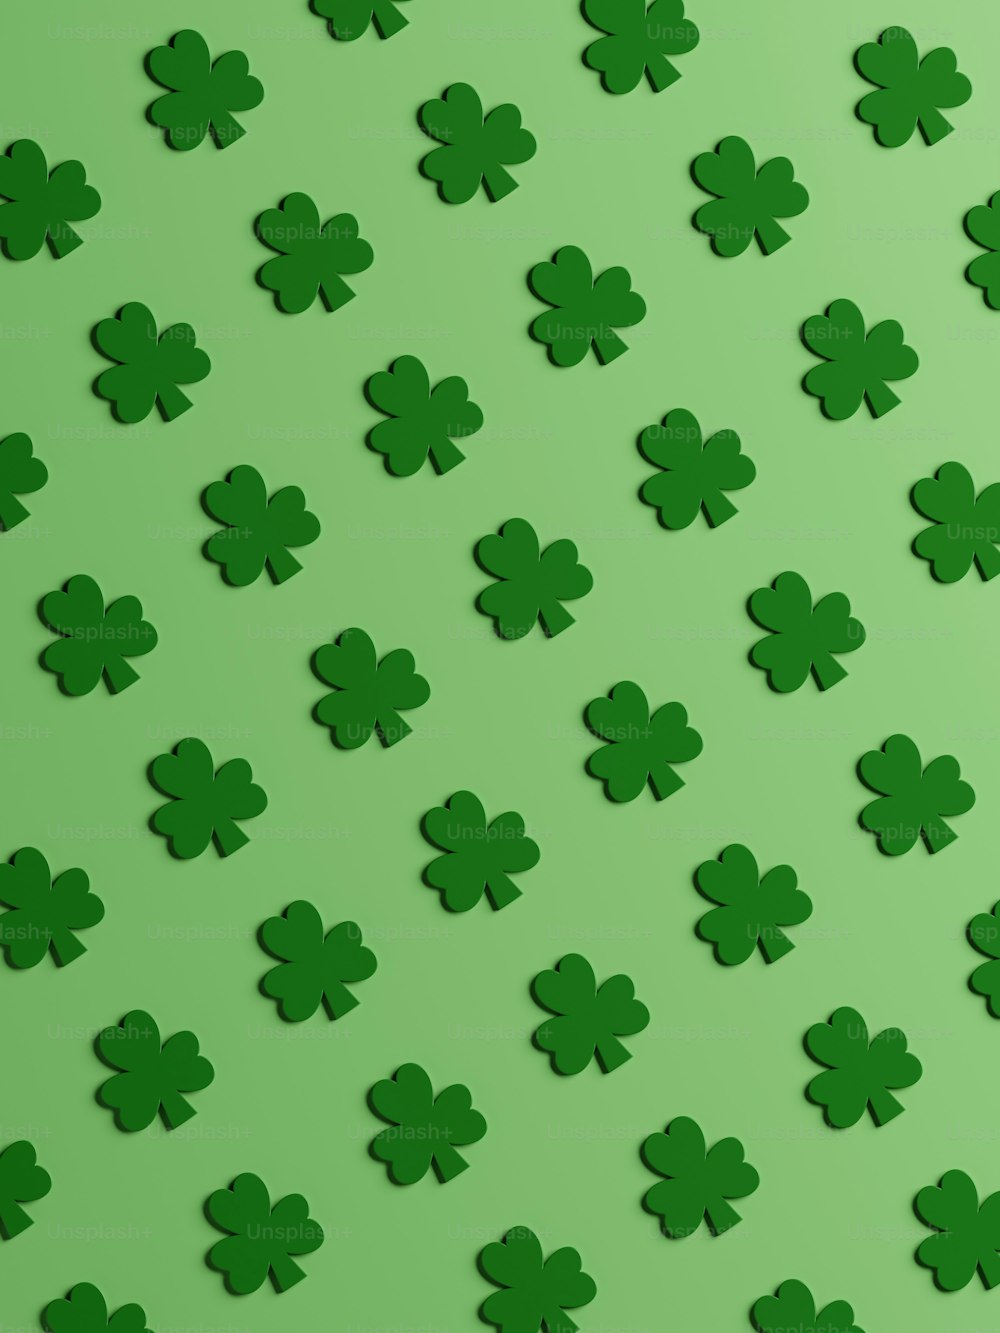 Un patrón de tréboles verdes sobre un fondo verde